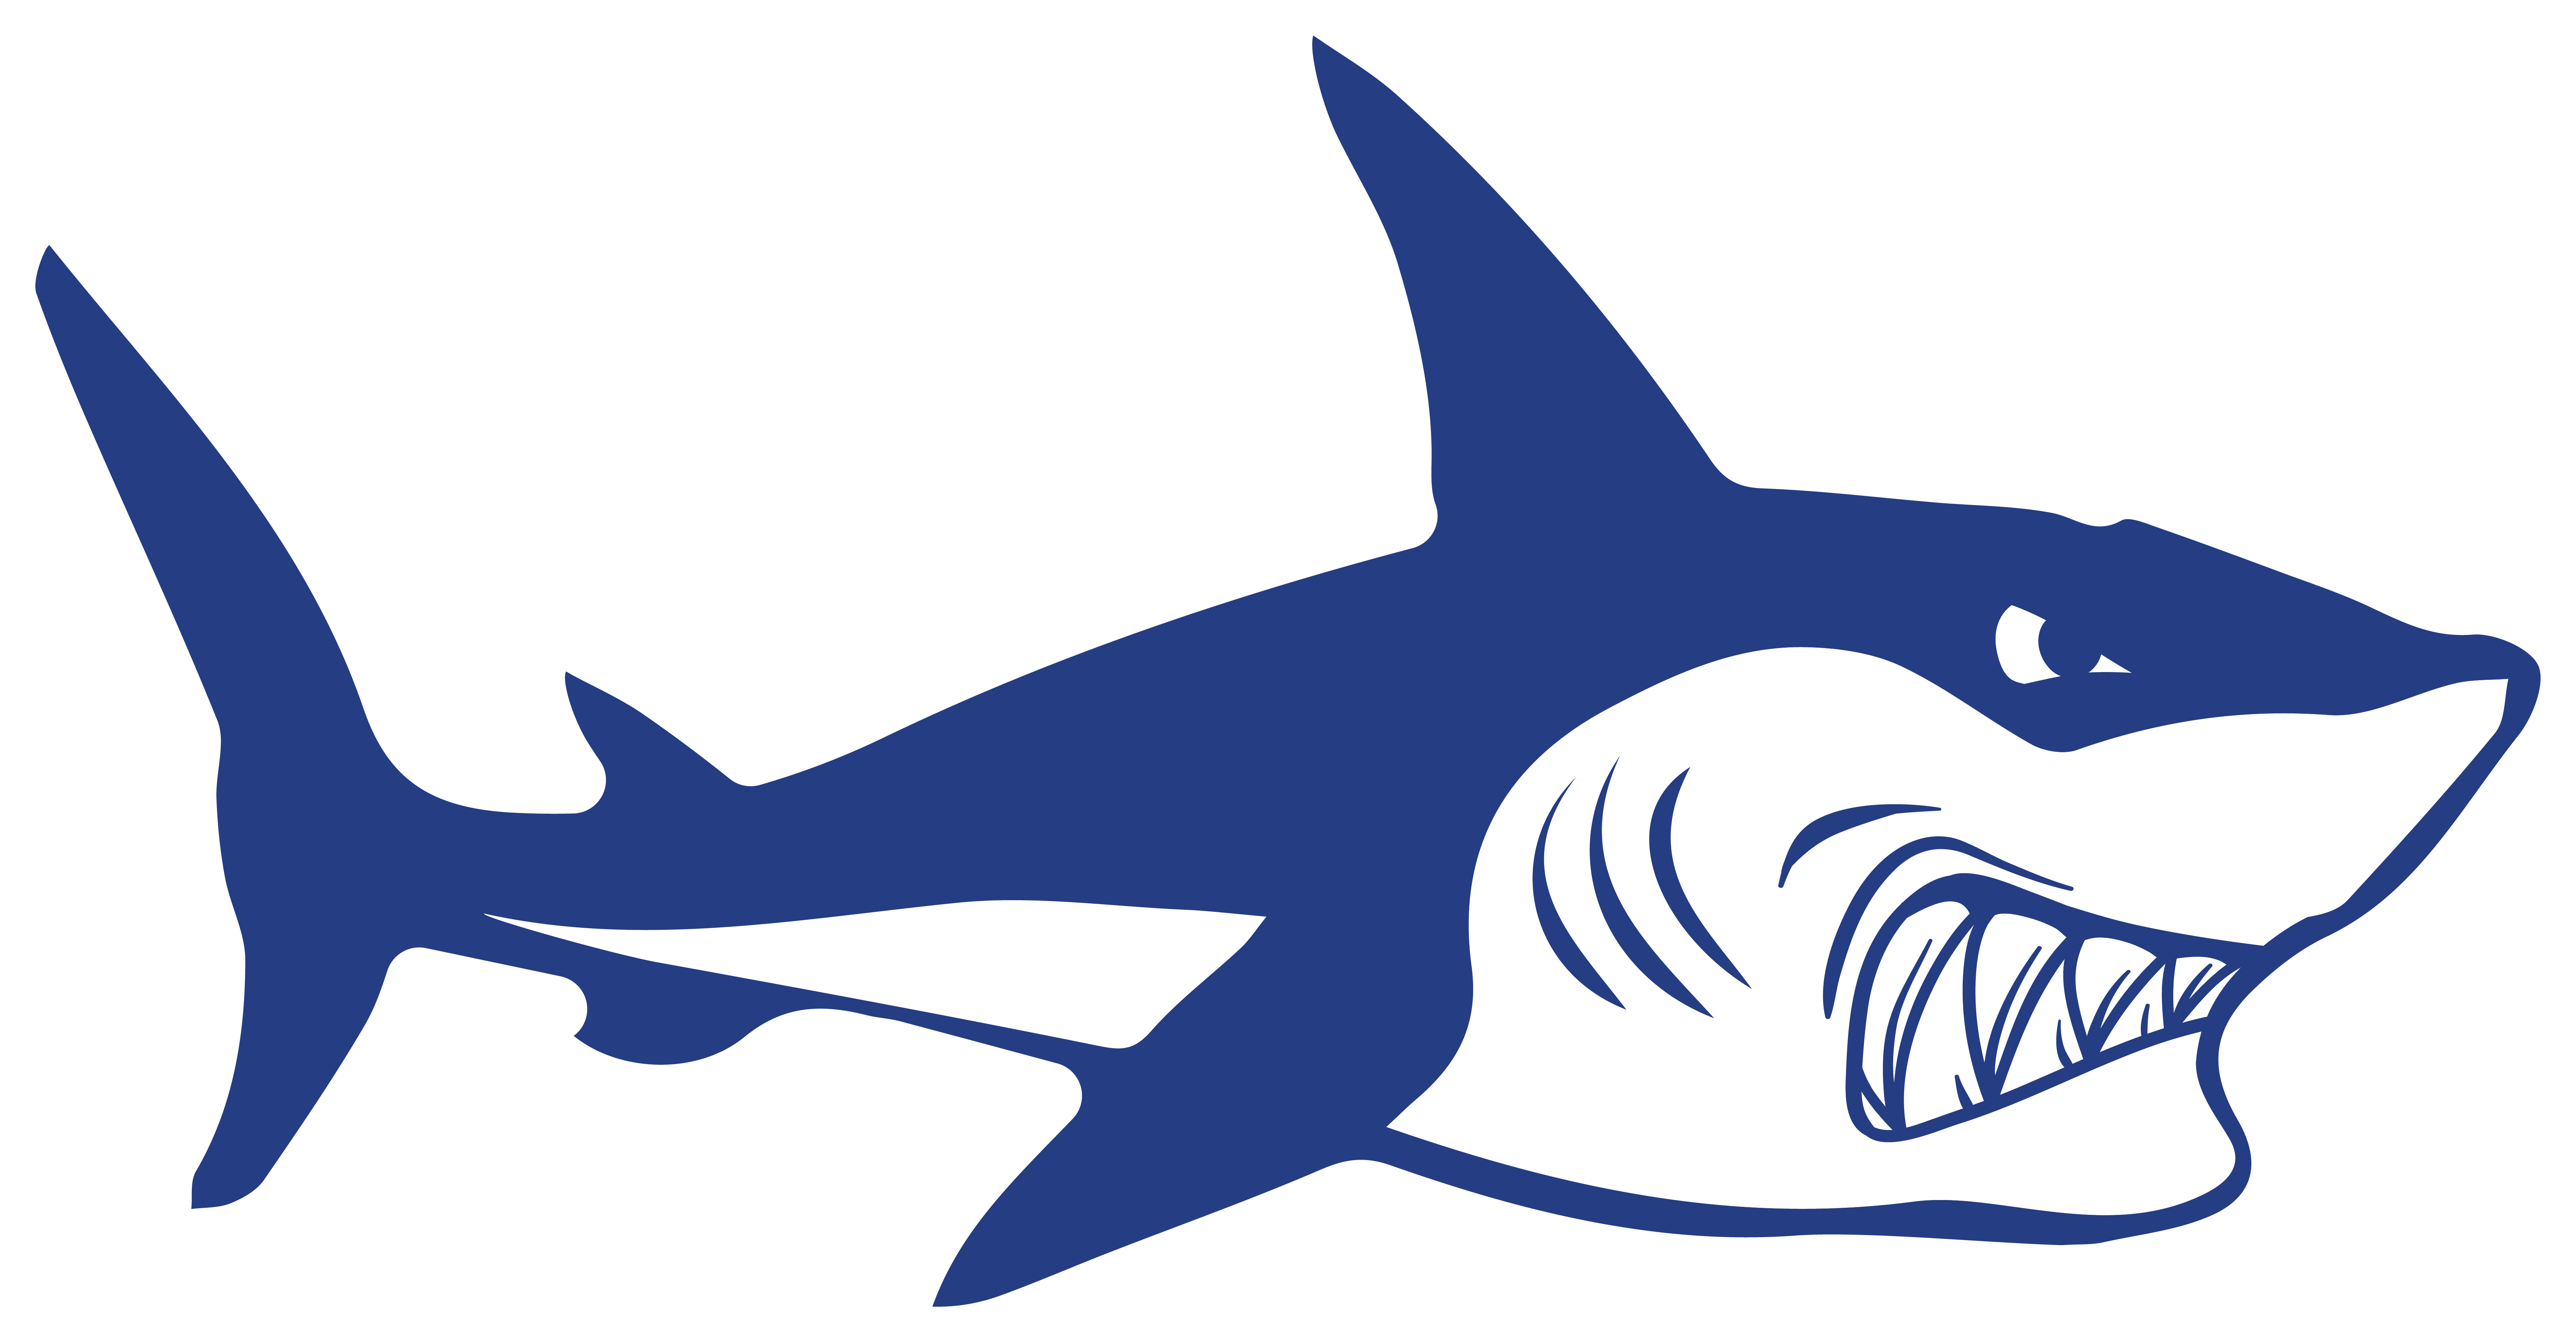 4x Aufkleber Shark Hai 6x4 cm für Auto KFZ Handy Laptop Haifisch Sticker